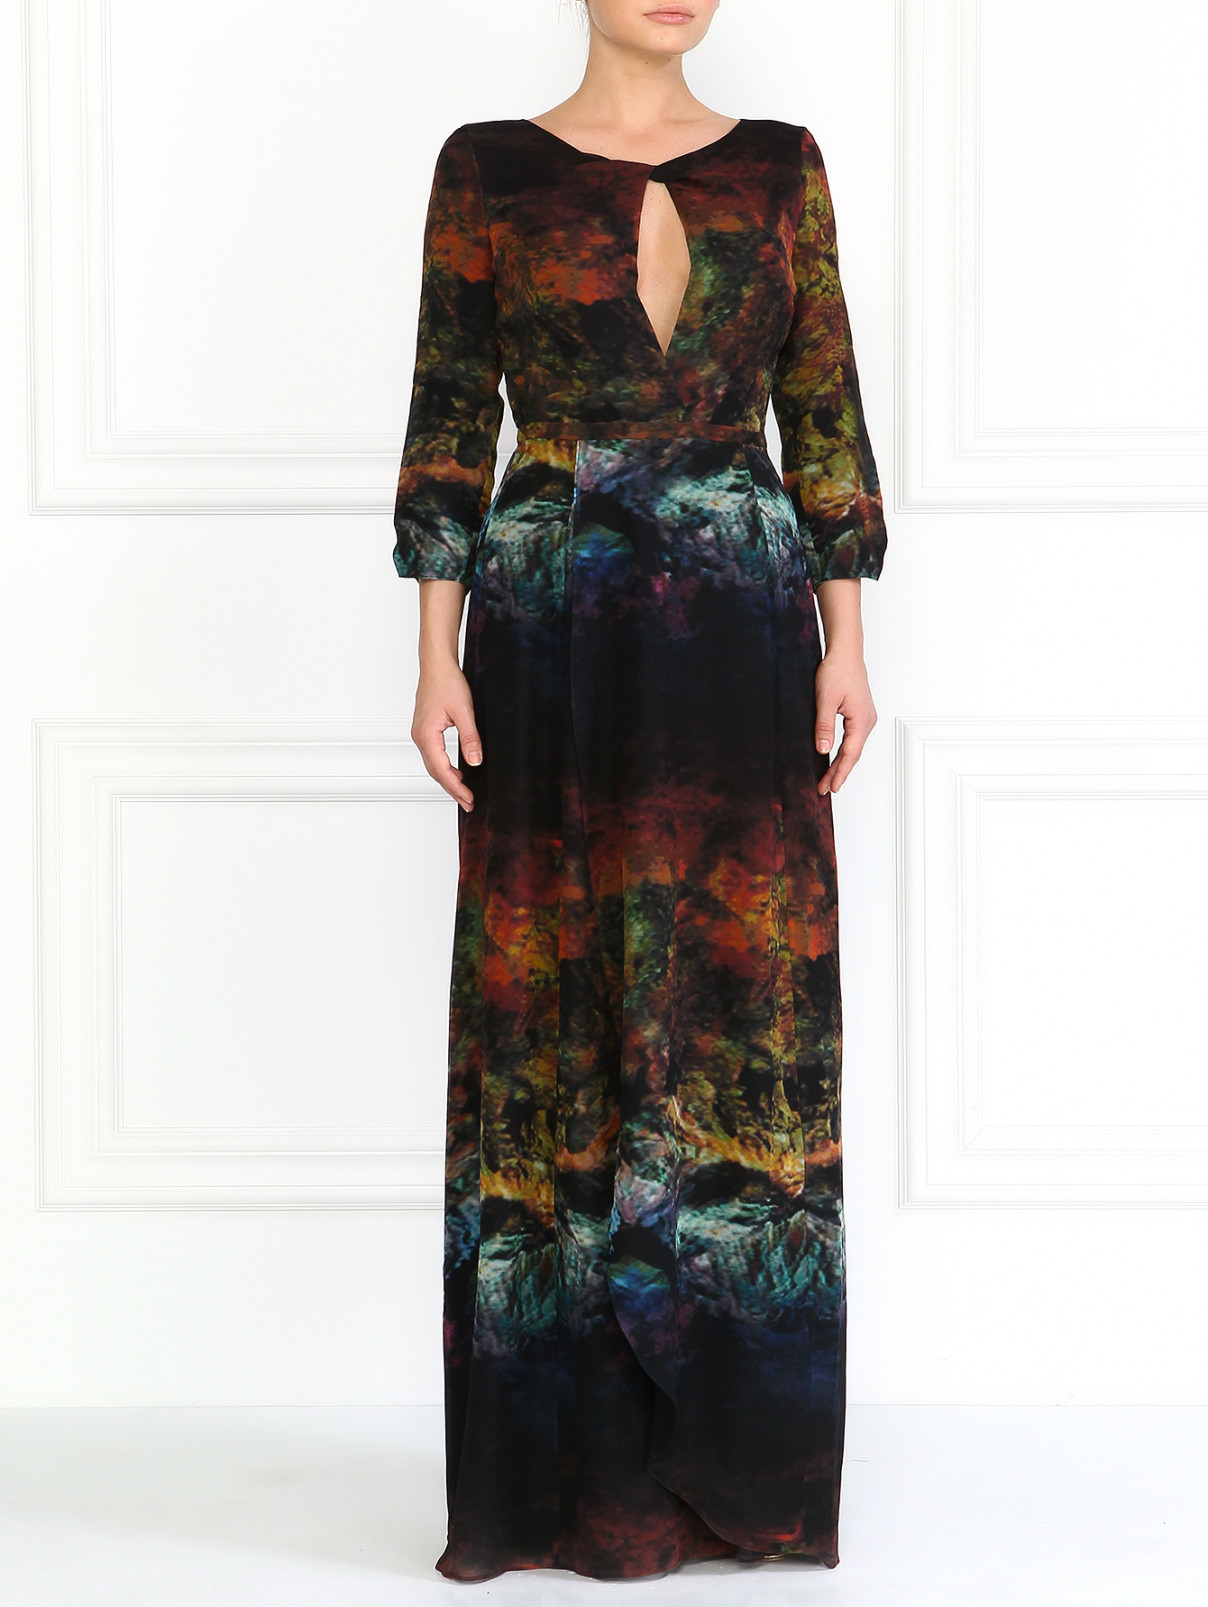 Шелковое платье с абстрактным принтом Felder Felder  –  Модель Общий вид  – Цвет:  Узор